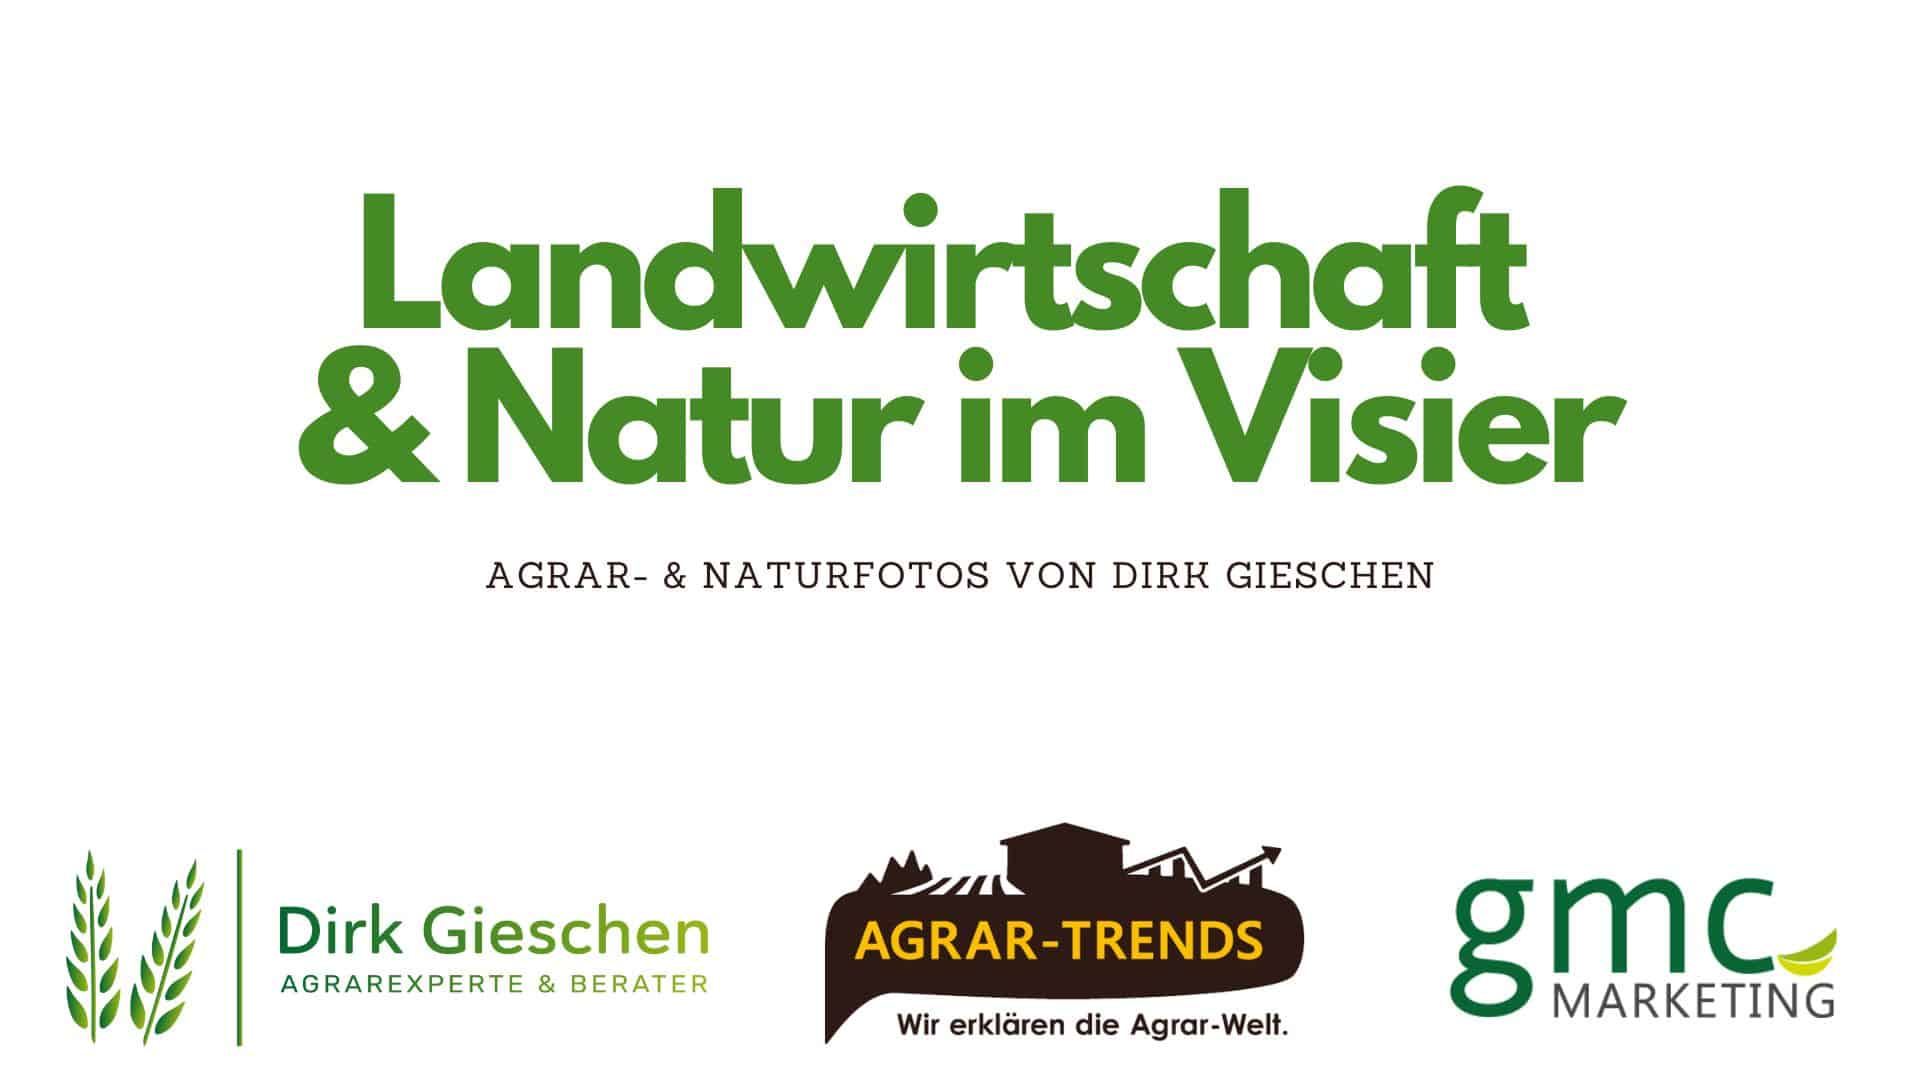 Landwirtschaft & Natur im Visier – Agrar- & Naturfotos von Dirk Gieschen